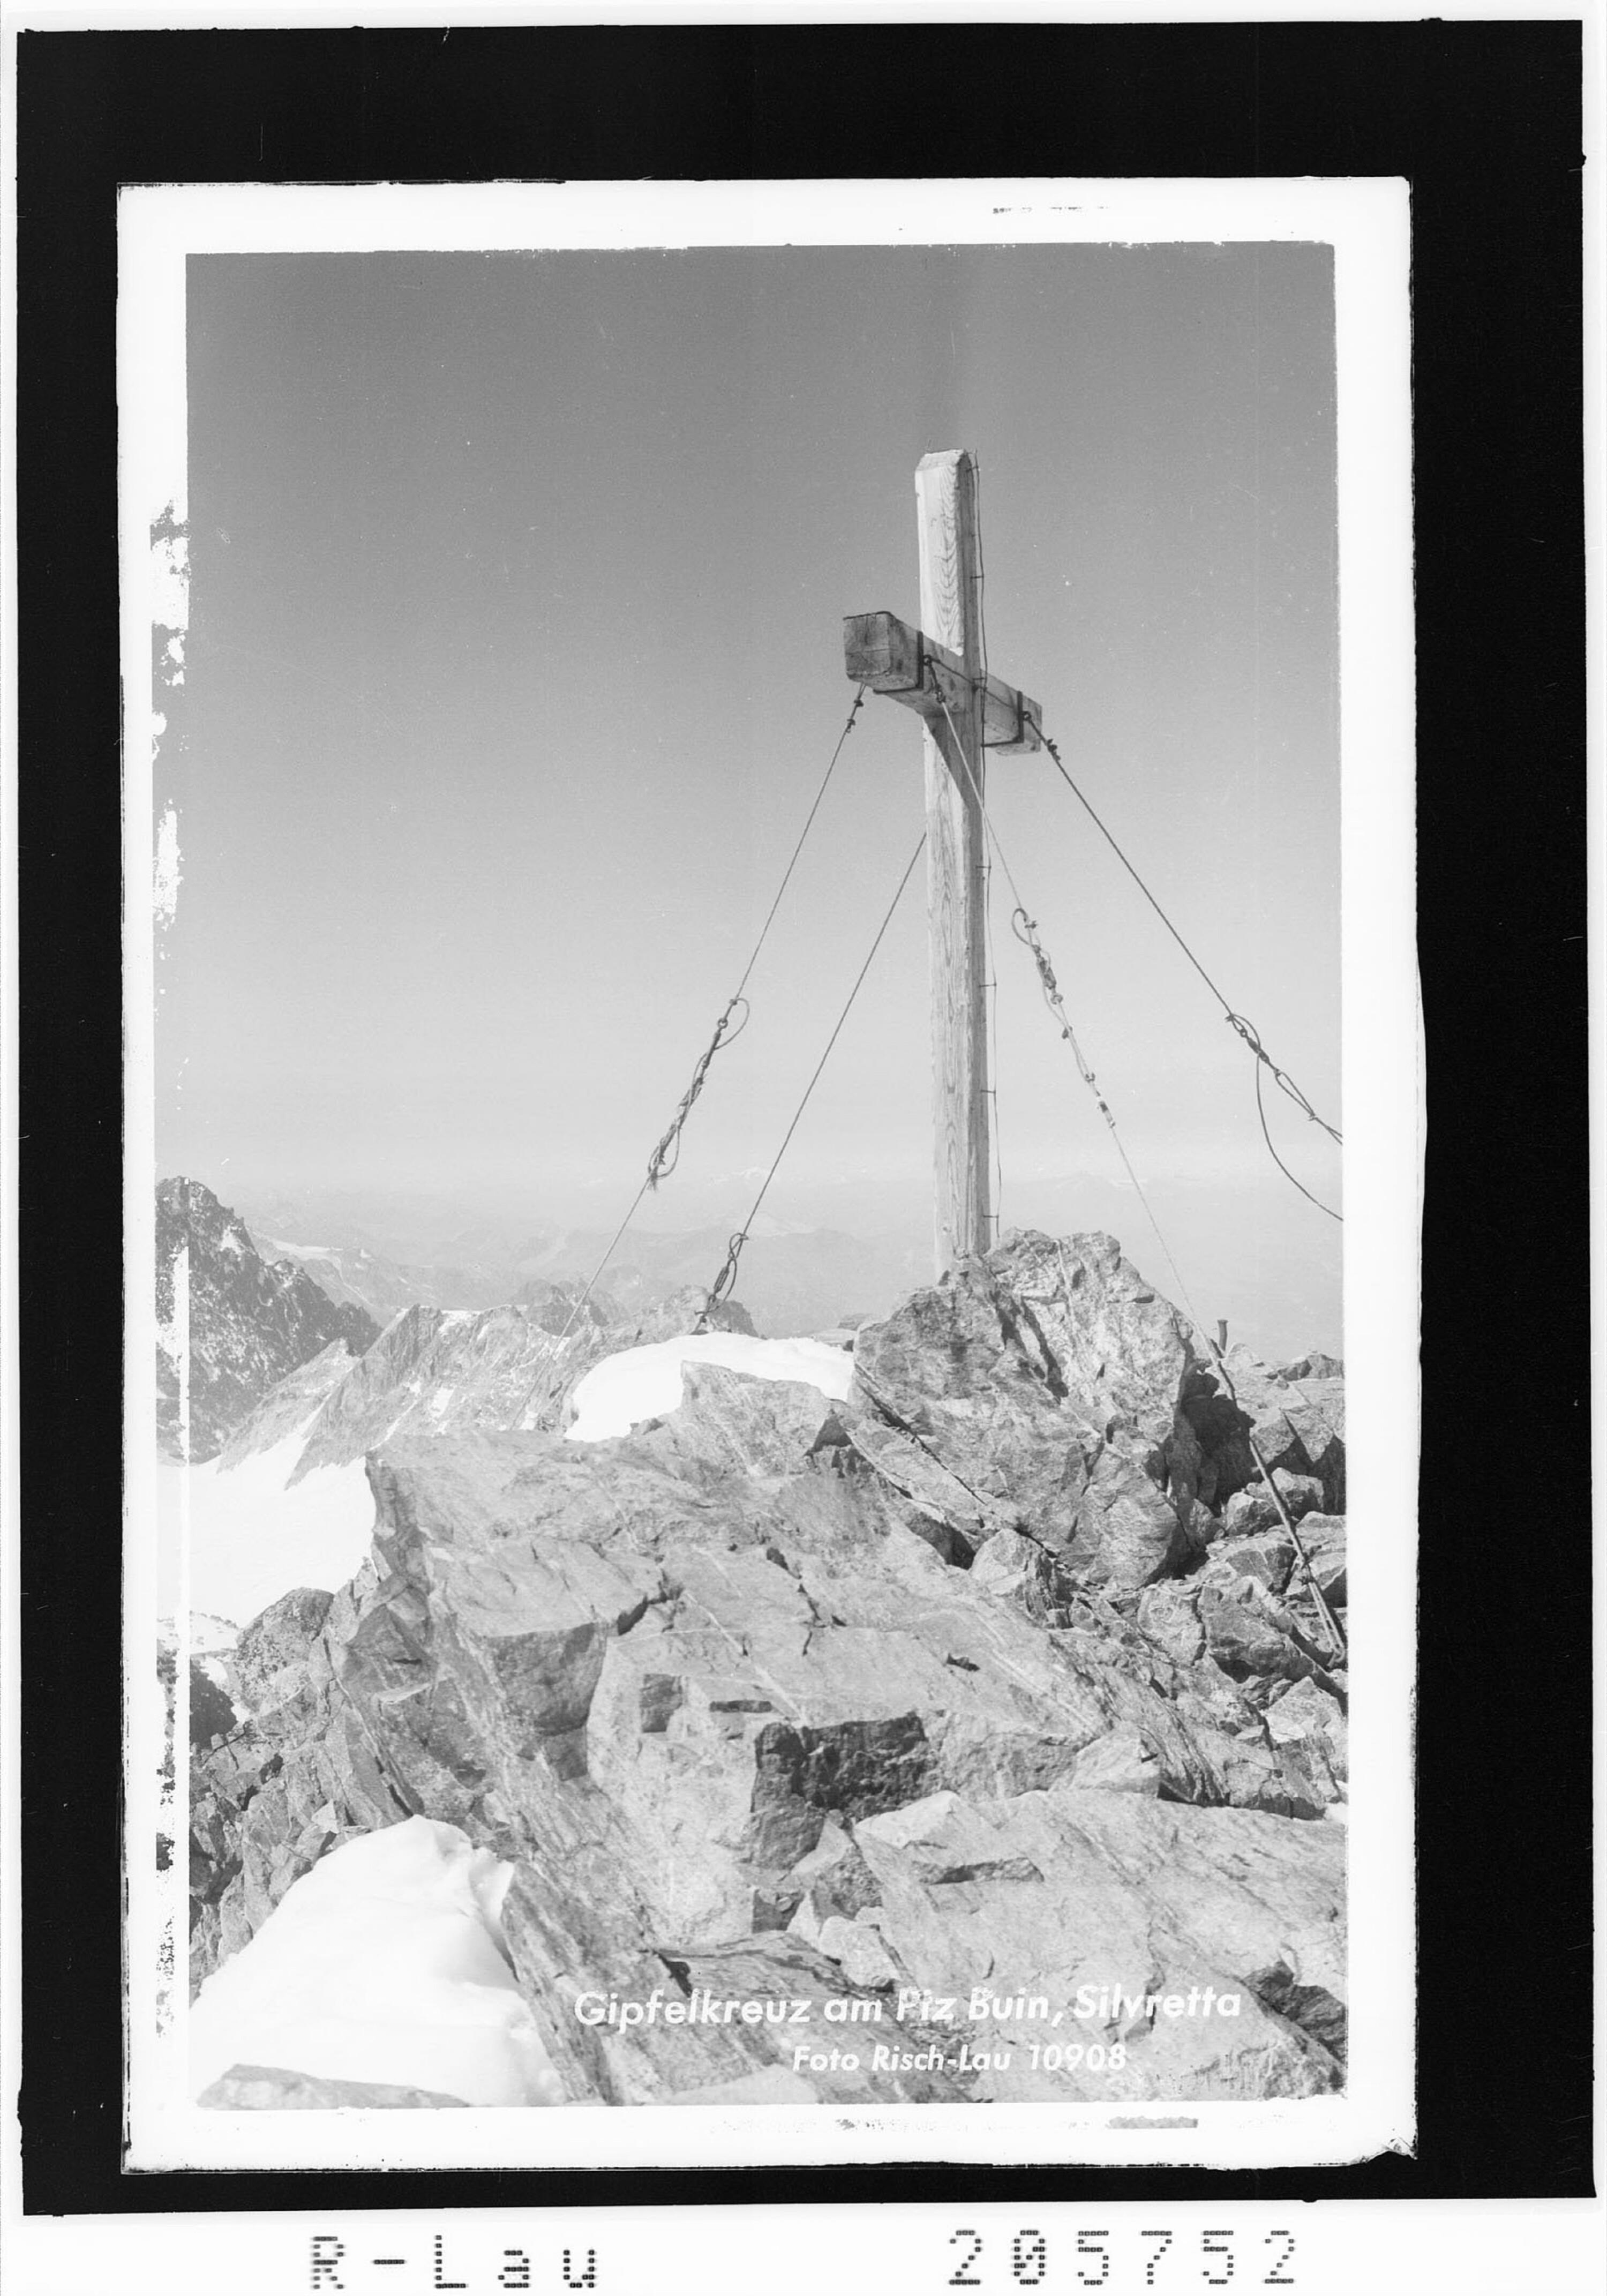 Gipfelkreuz am Piz Buin / Silvretta></div>


    <hr>
    <div class=